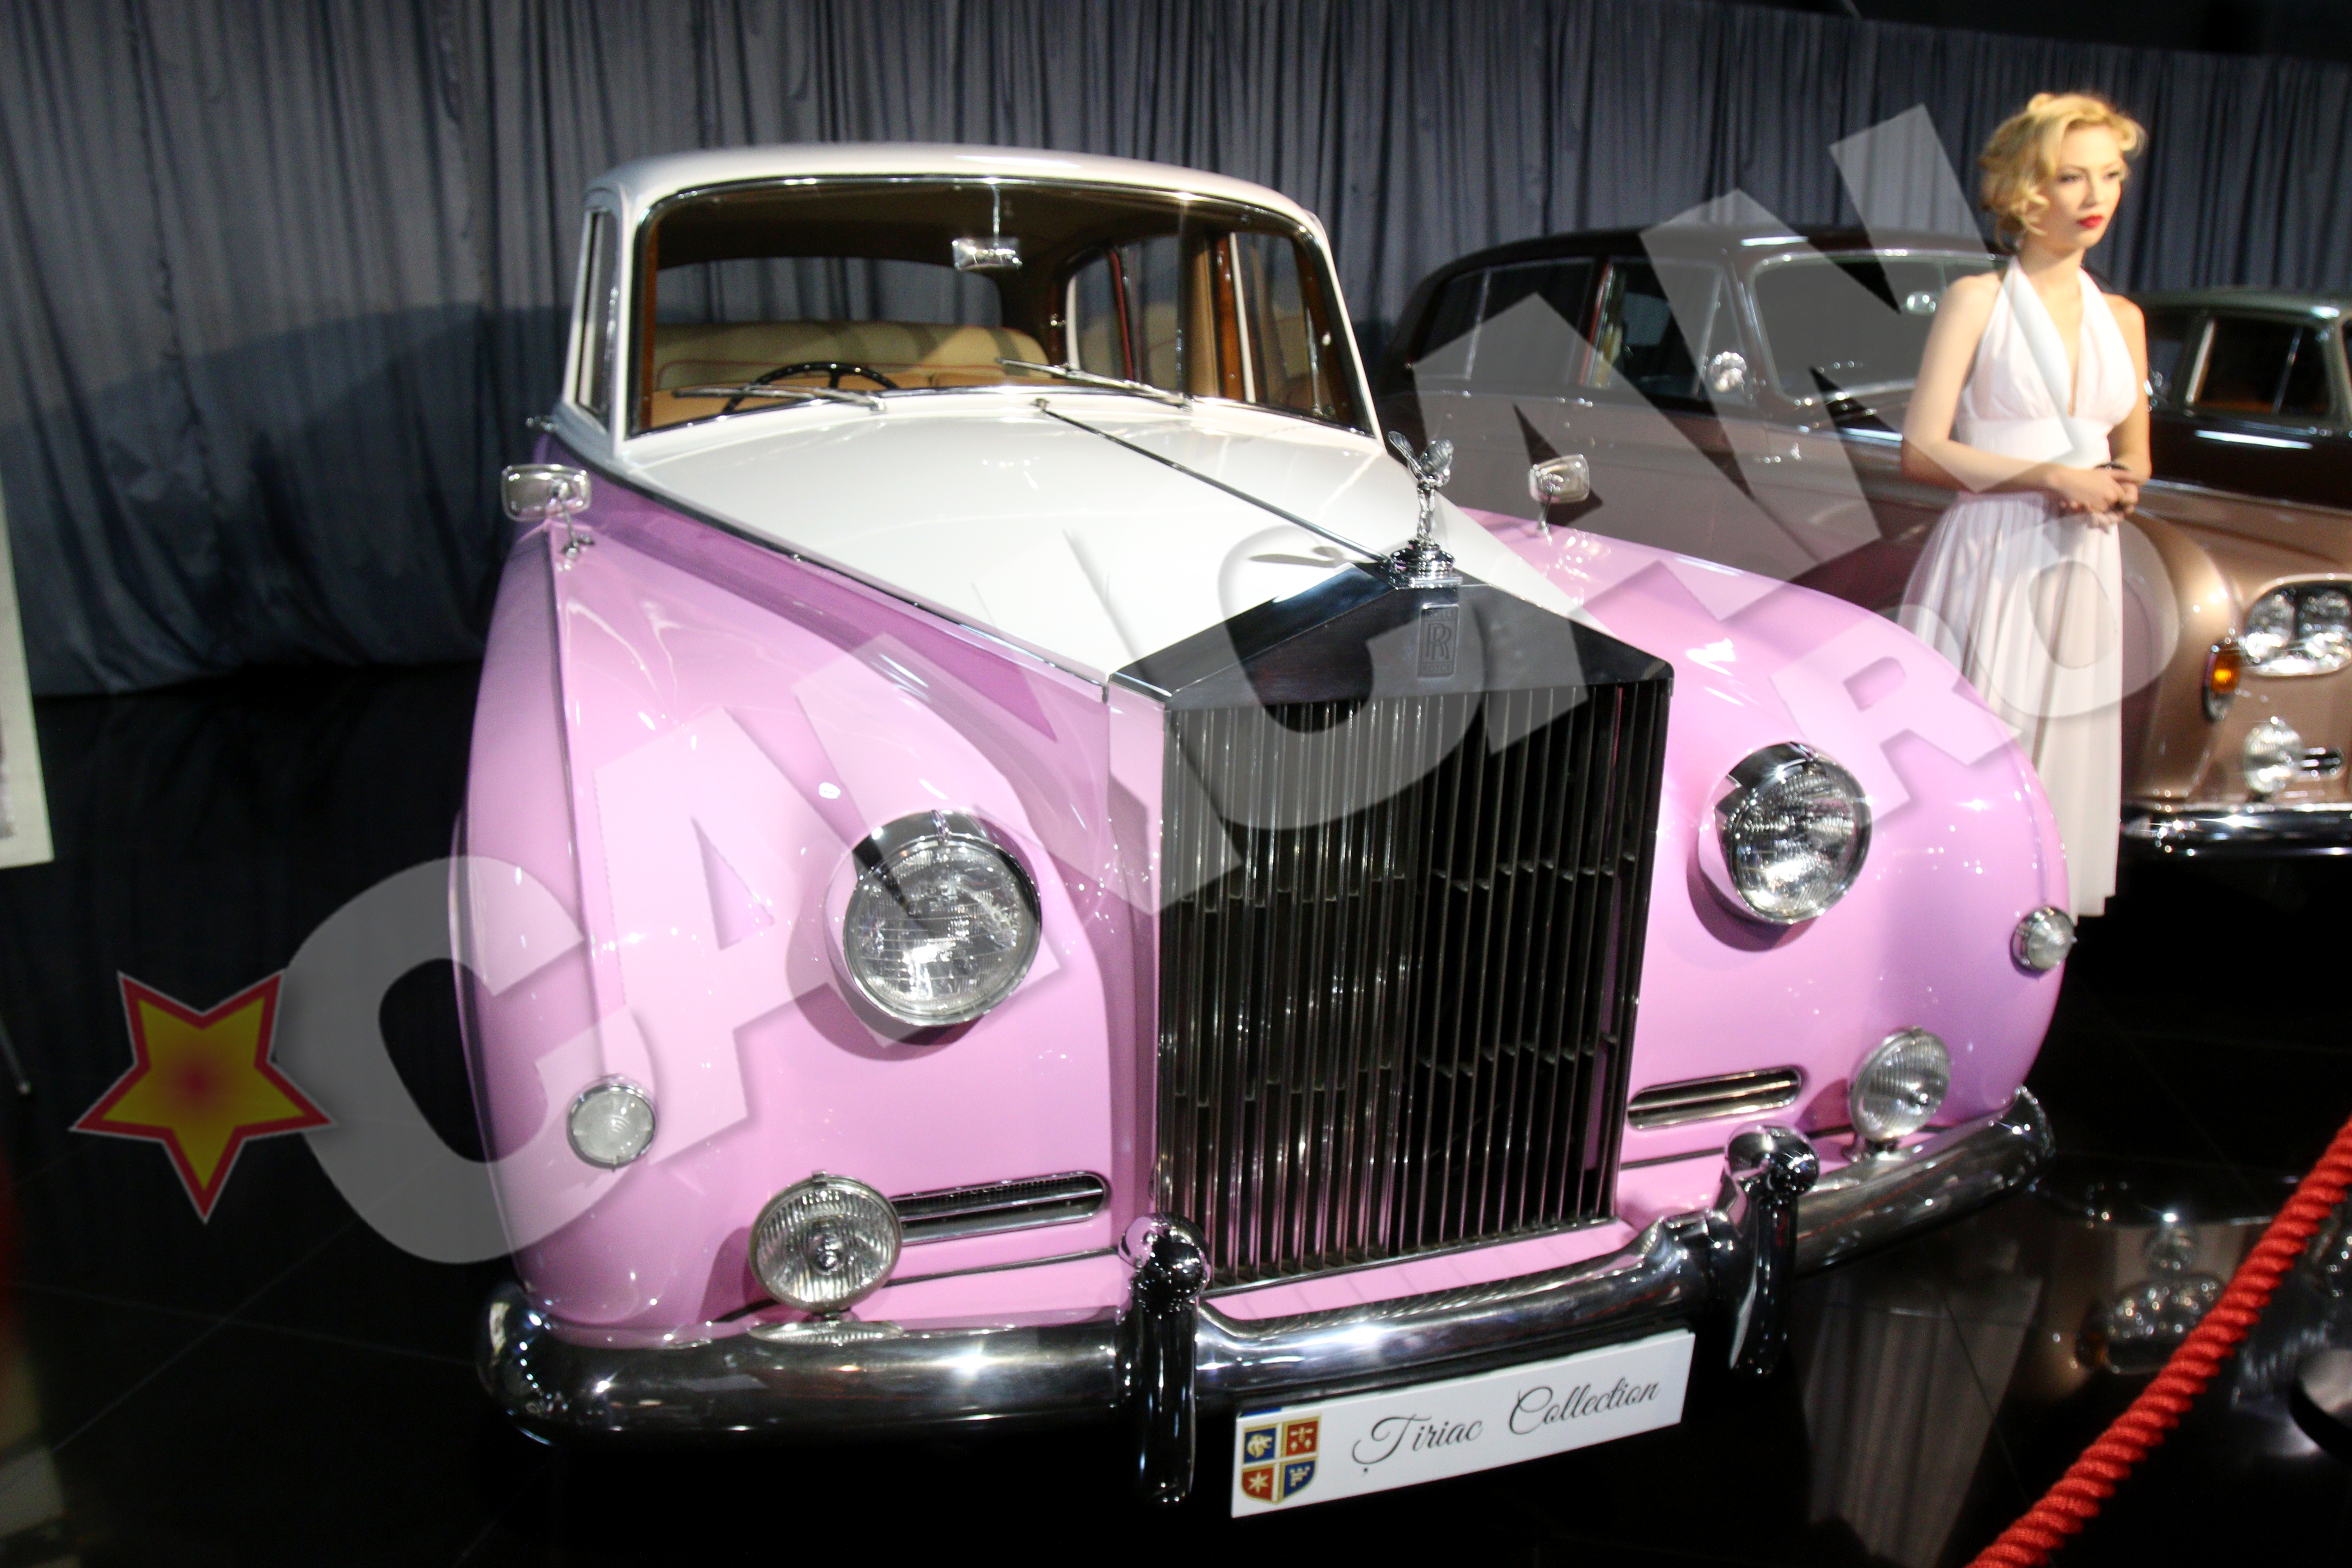 Rolls-ul din imagine i-a apartinut lui Elton John, el fiind cel care a cerut sa fie vopsita in roz si alb